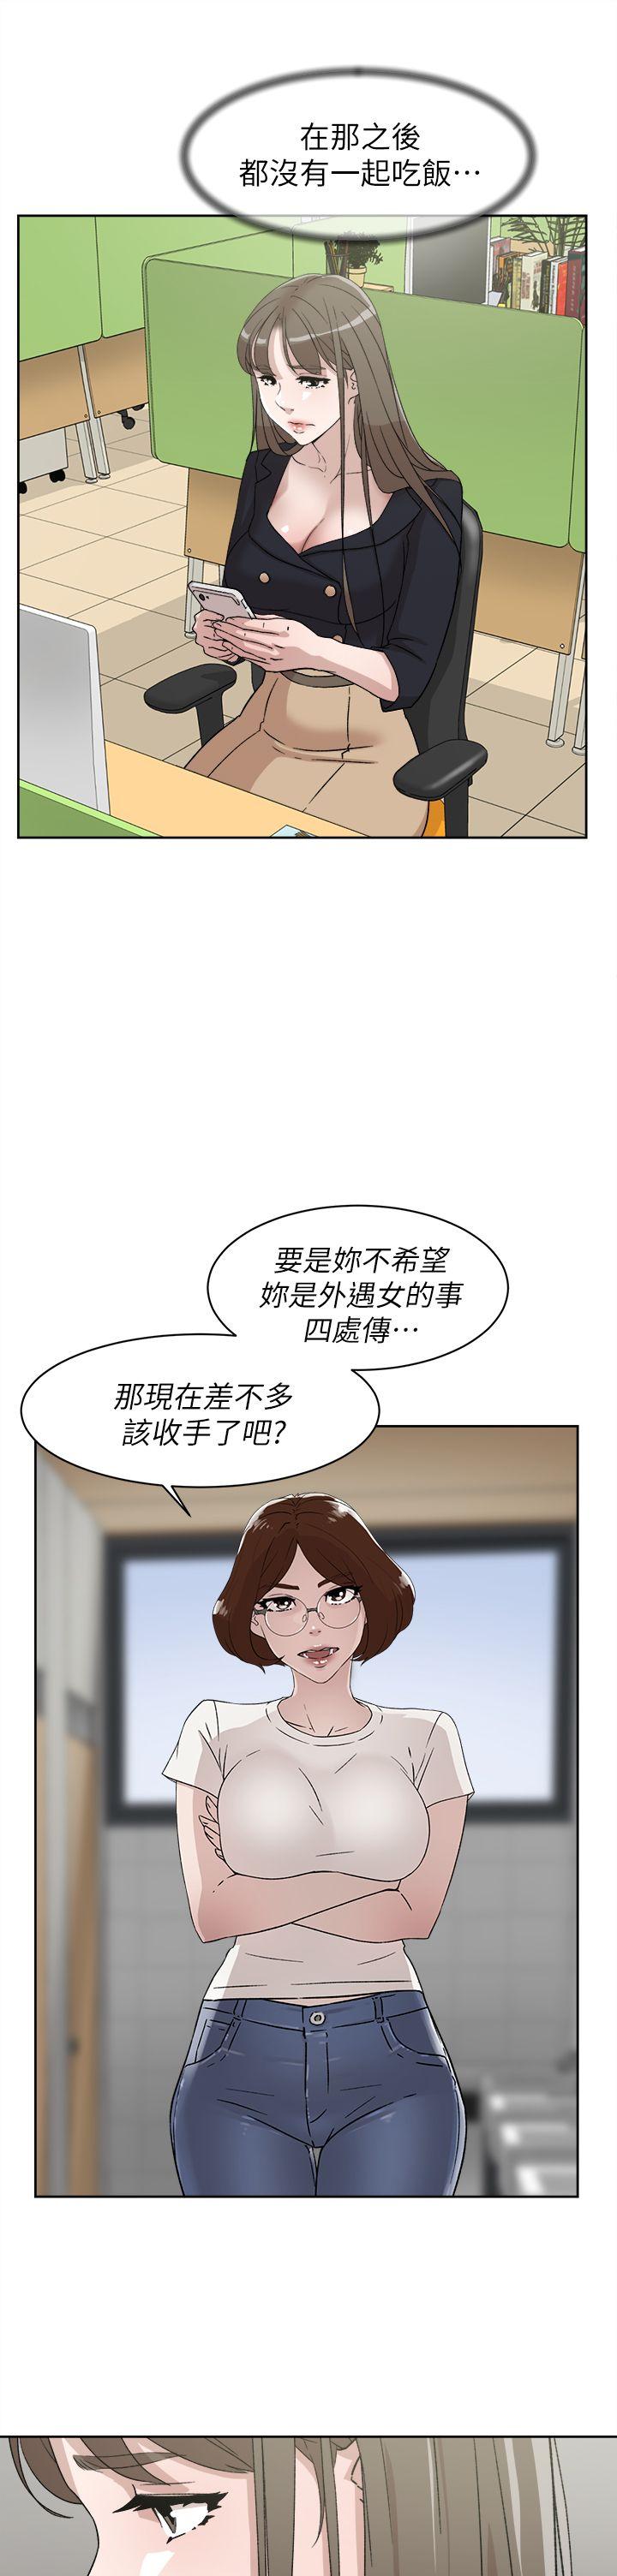 韩国污漫画 她的高跟鞋(無刪減) 第51话 23